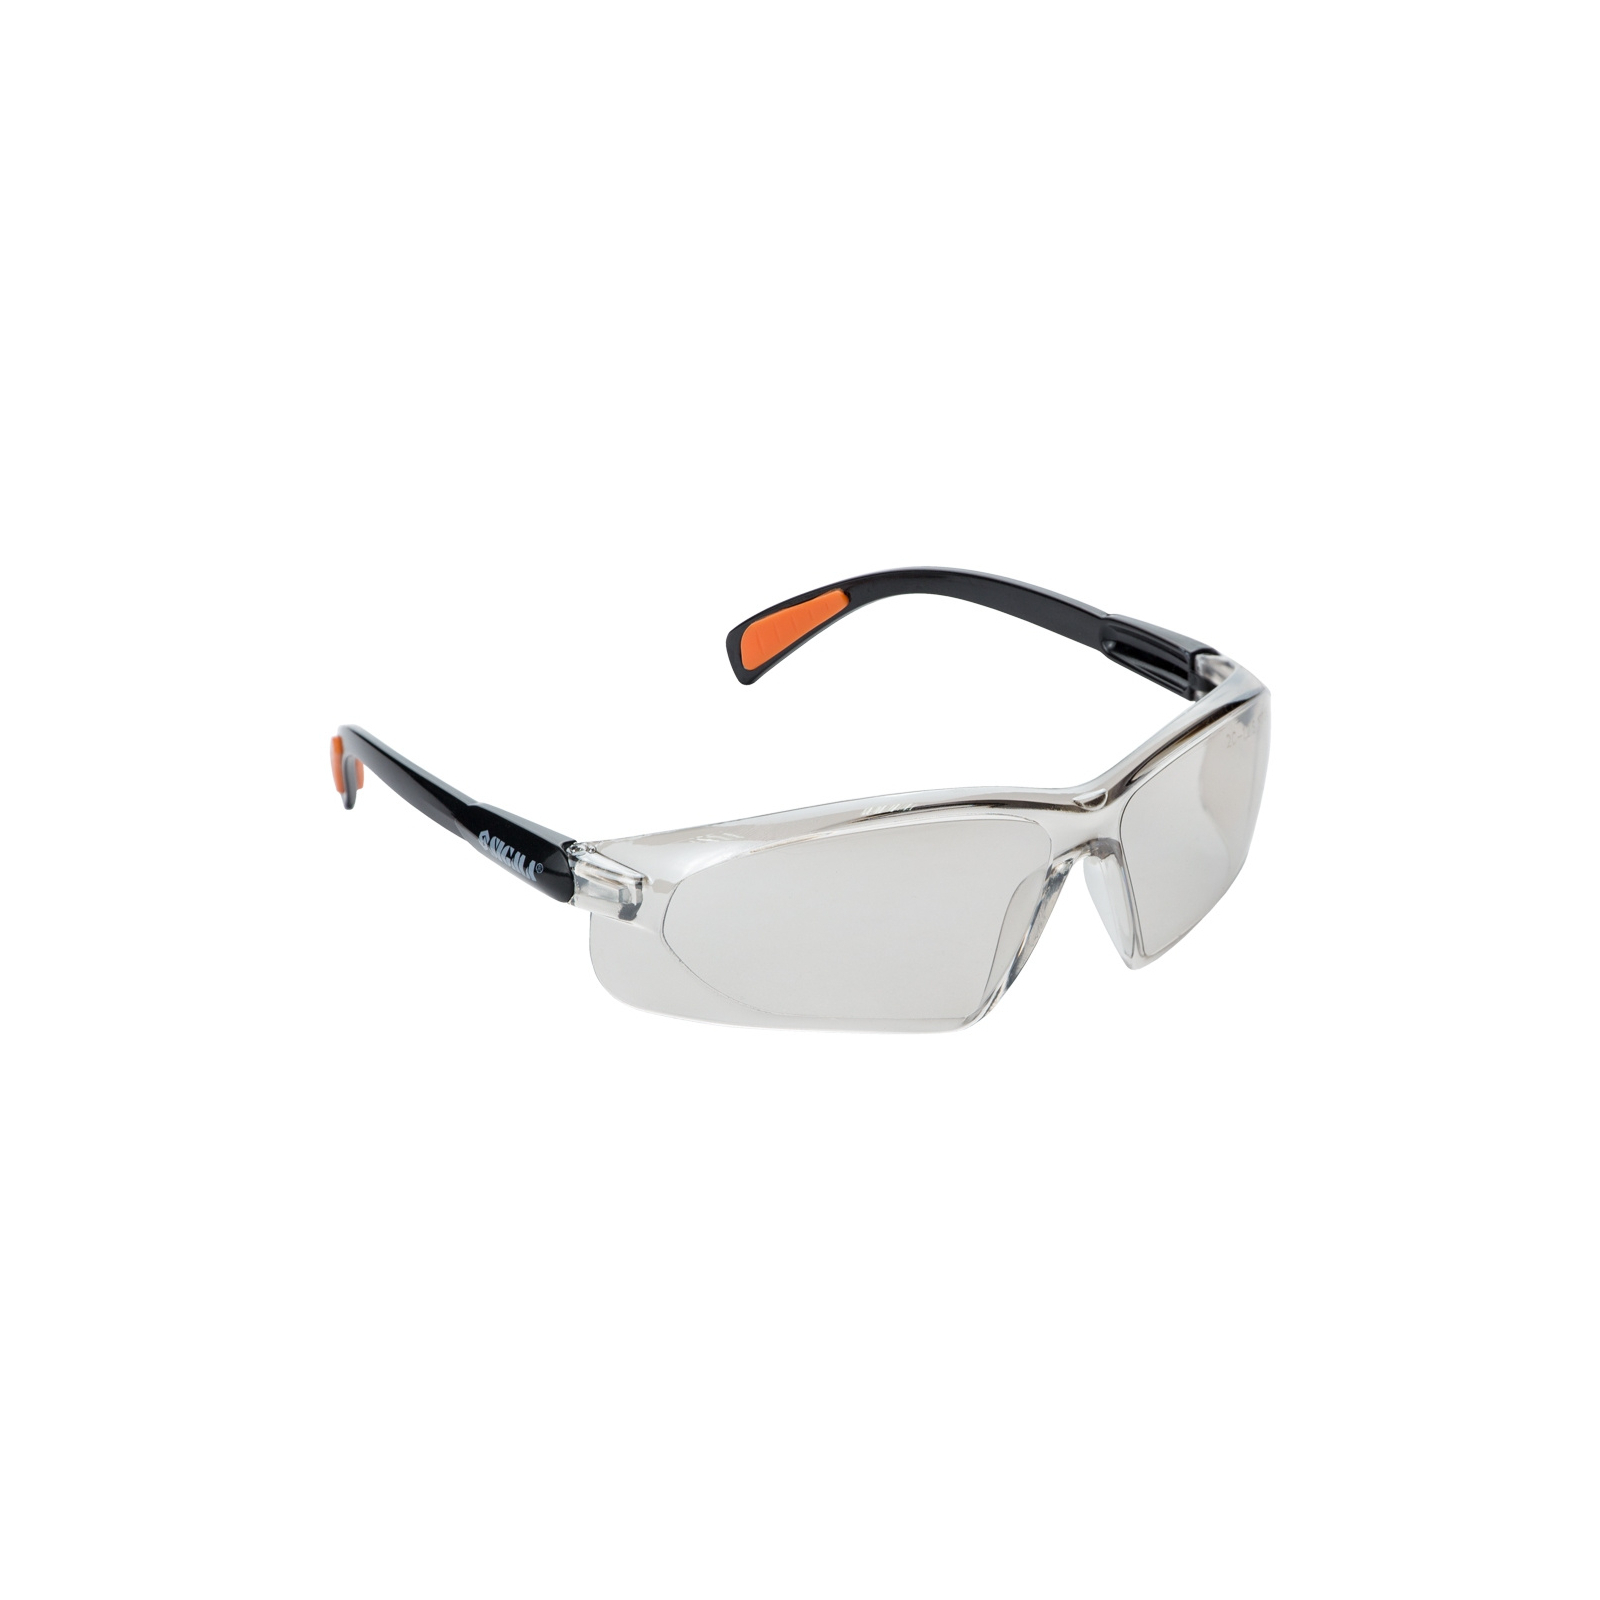 Защитные очки Sigma Vulcan (9410451)